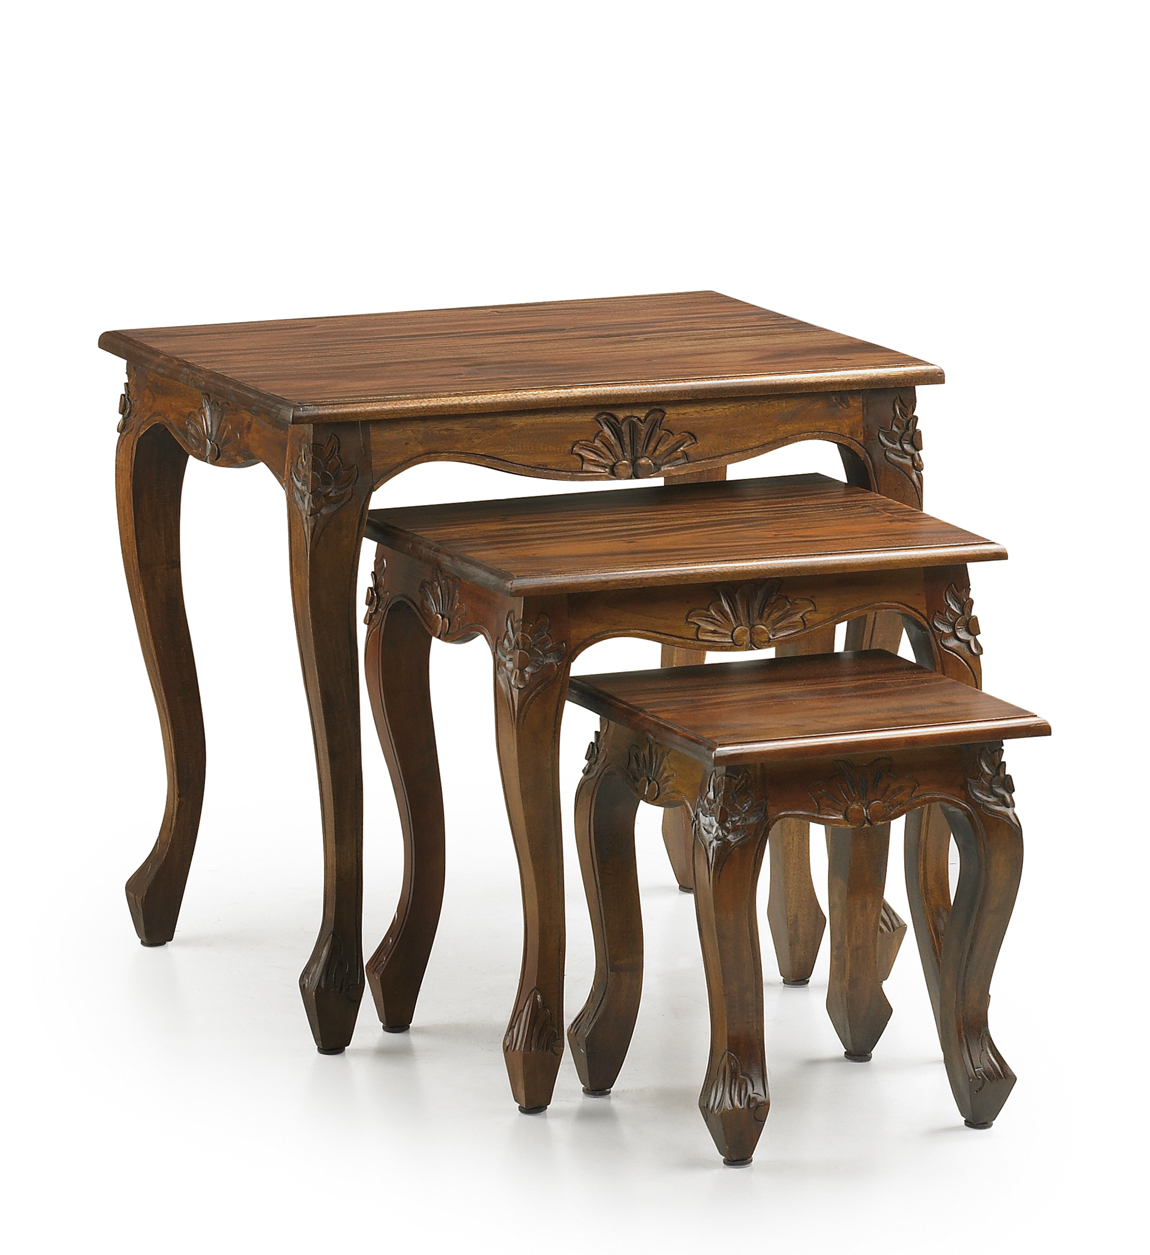 Lot de 3 tables en bois marron. L60 cm, L 45 cm, L30 cm